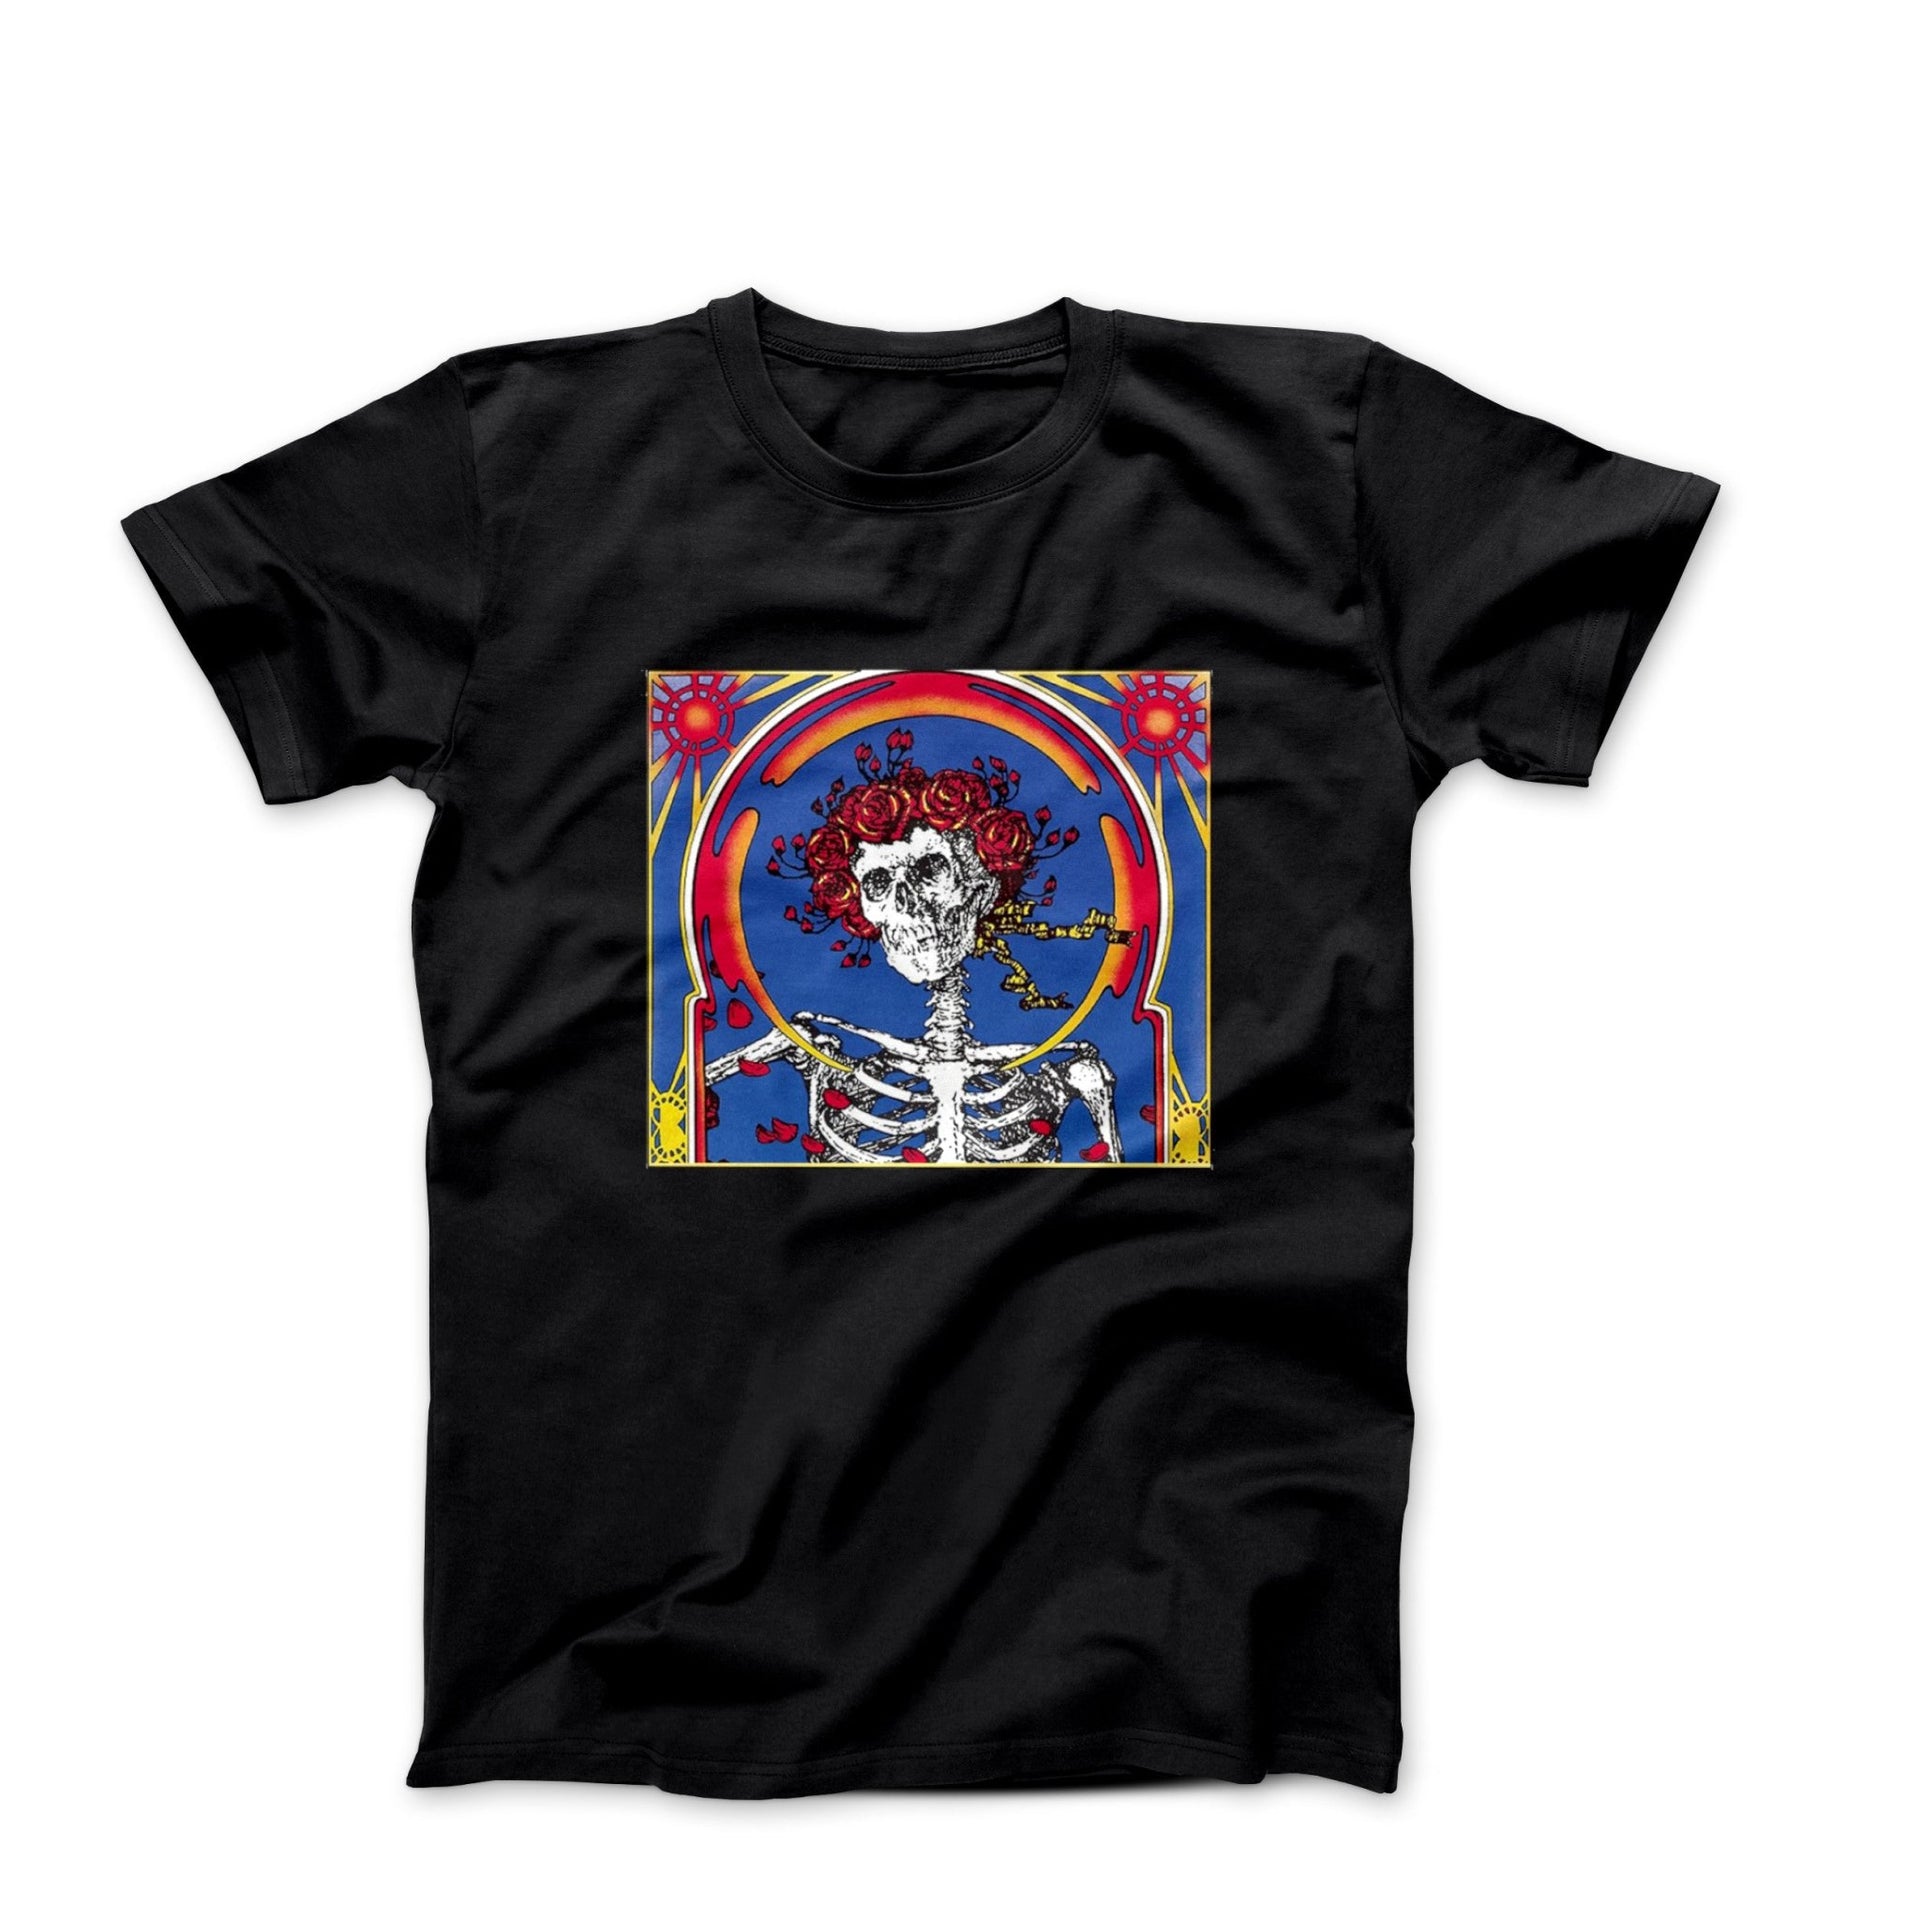 Grateful Dead Blow Your Mind (1971) Album Cover T-shirt - Clothing - Harvey Ltd